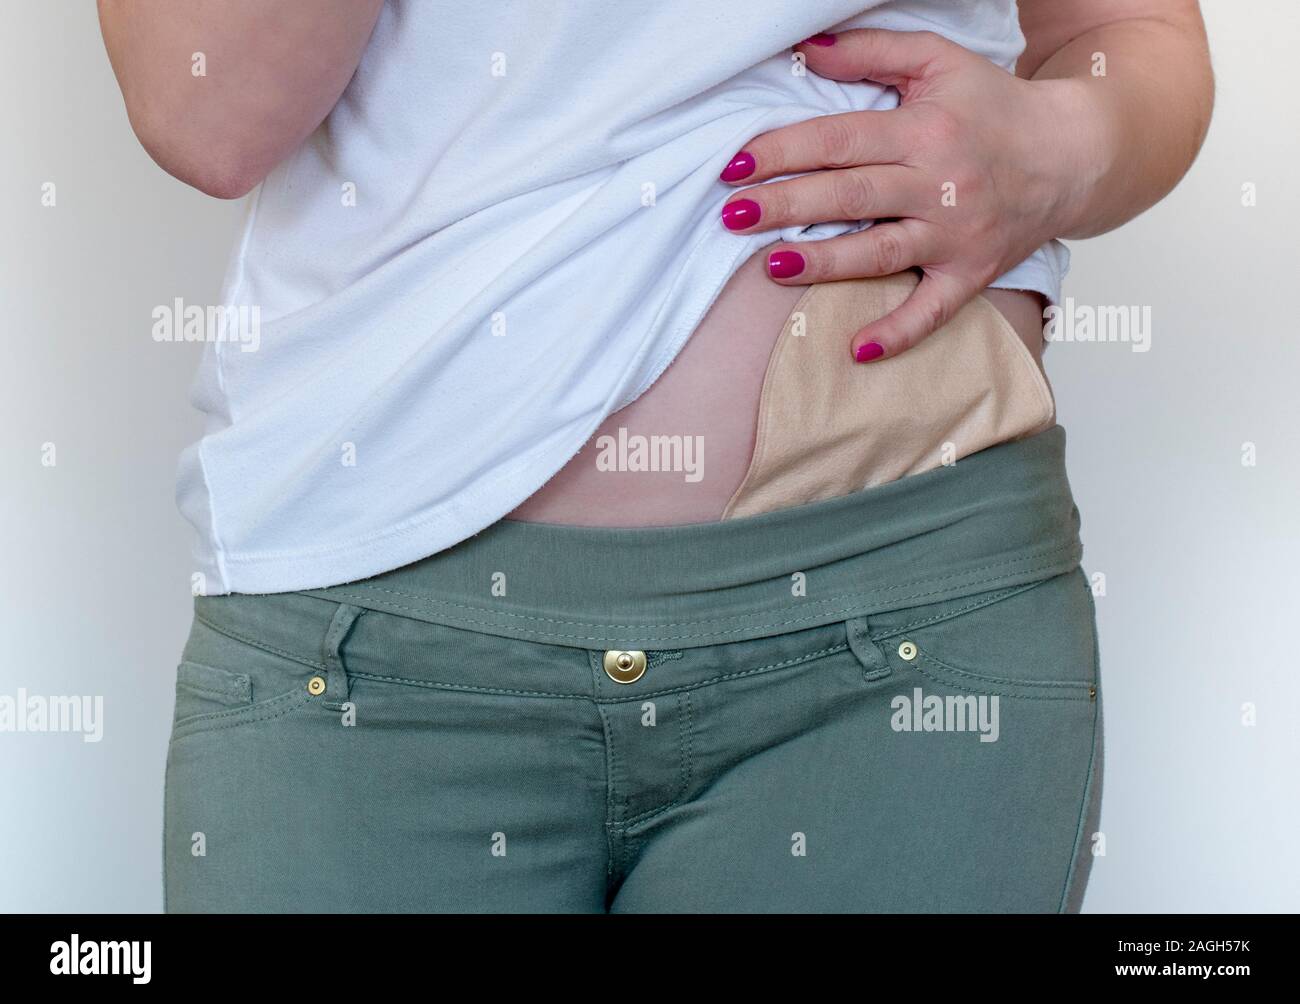 La colostomia borsa in pelle di colore attaccata alla giovane donna paziente. Close-up sulla tasca per ostomia dopo la chirurgia del colon. Tema medico. Colon cancer treatment Foto Stock